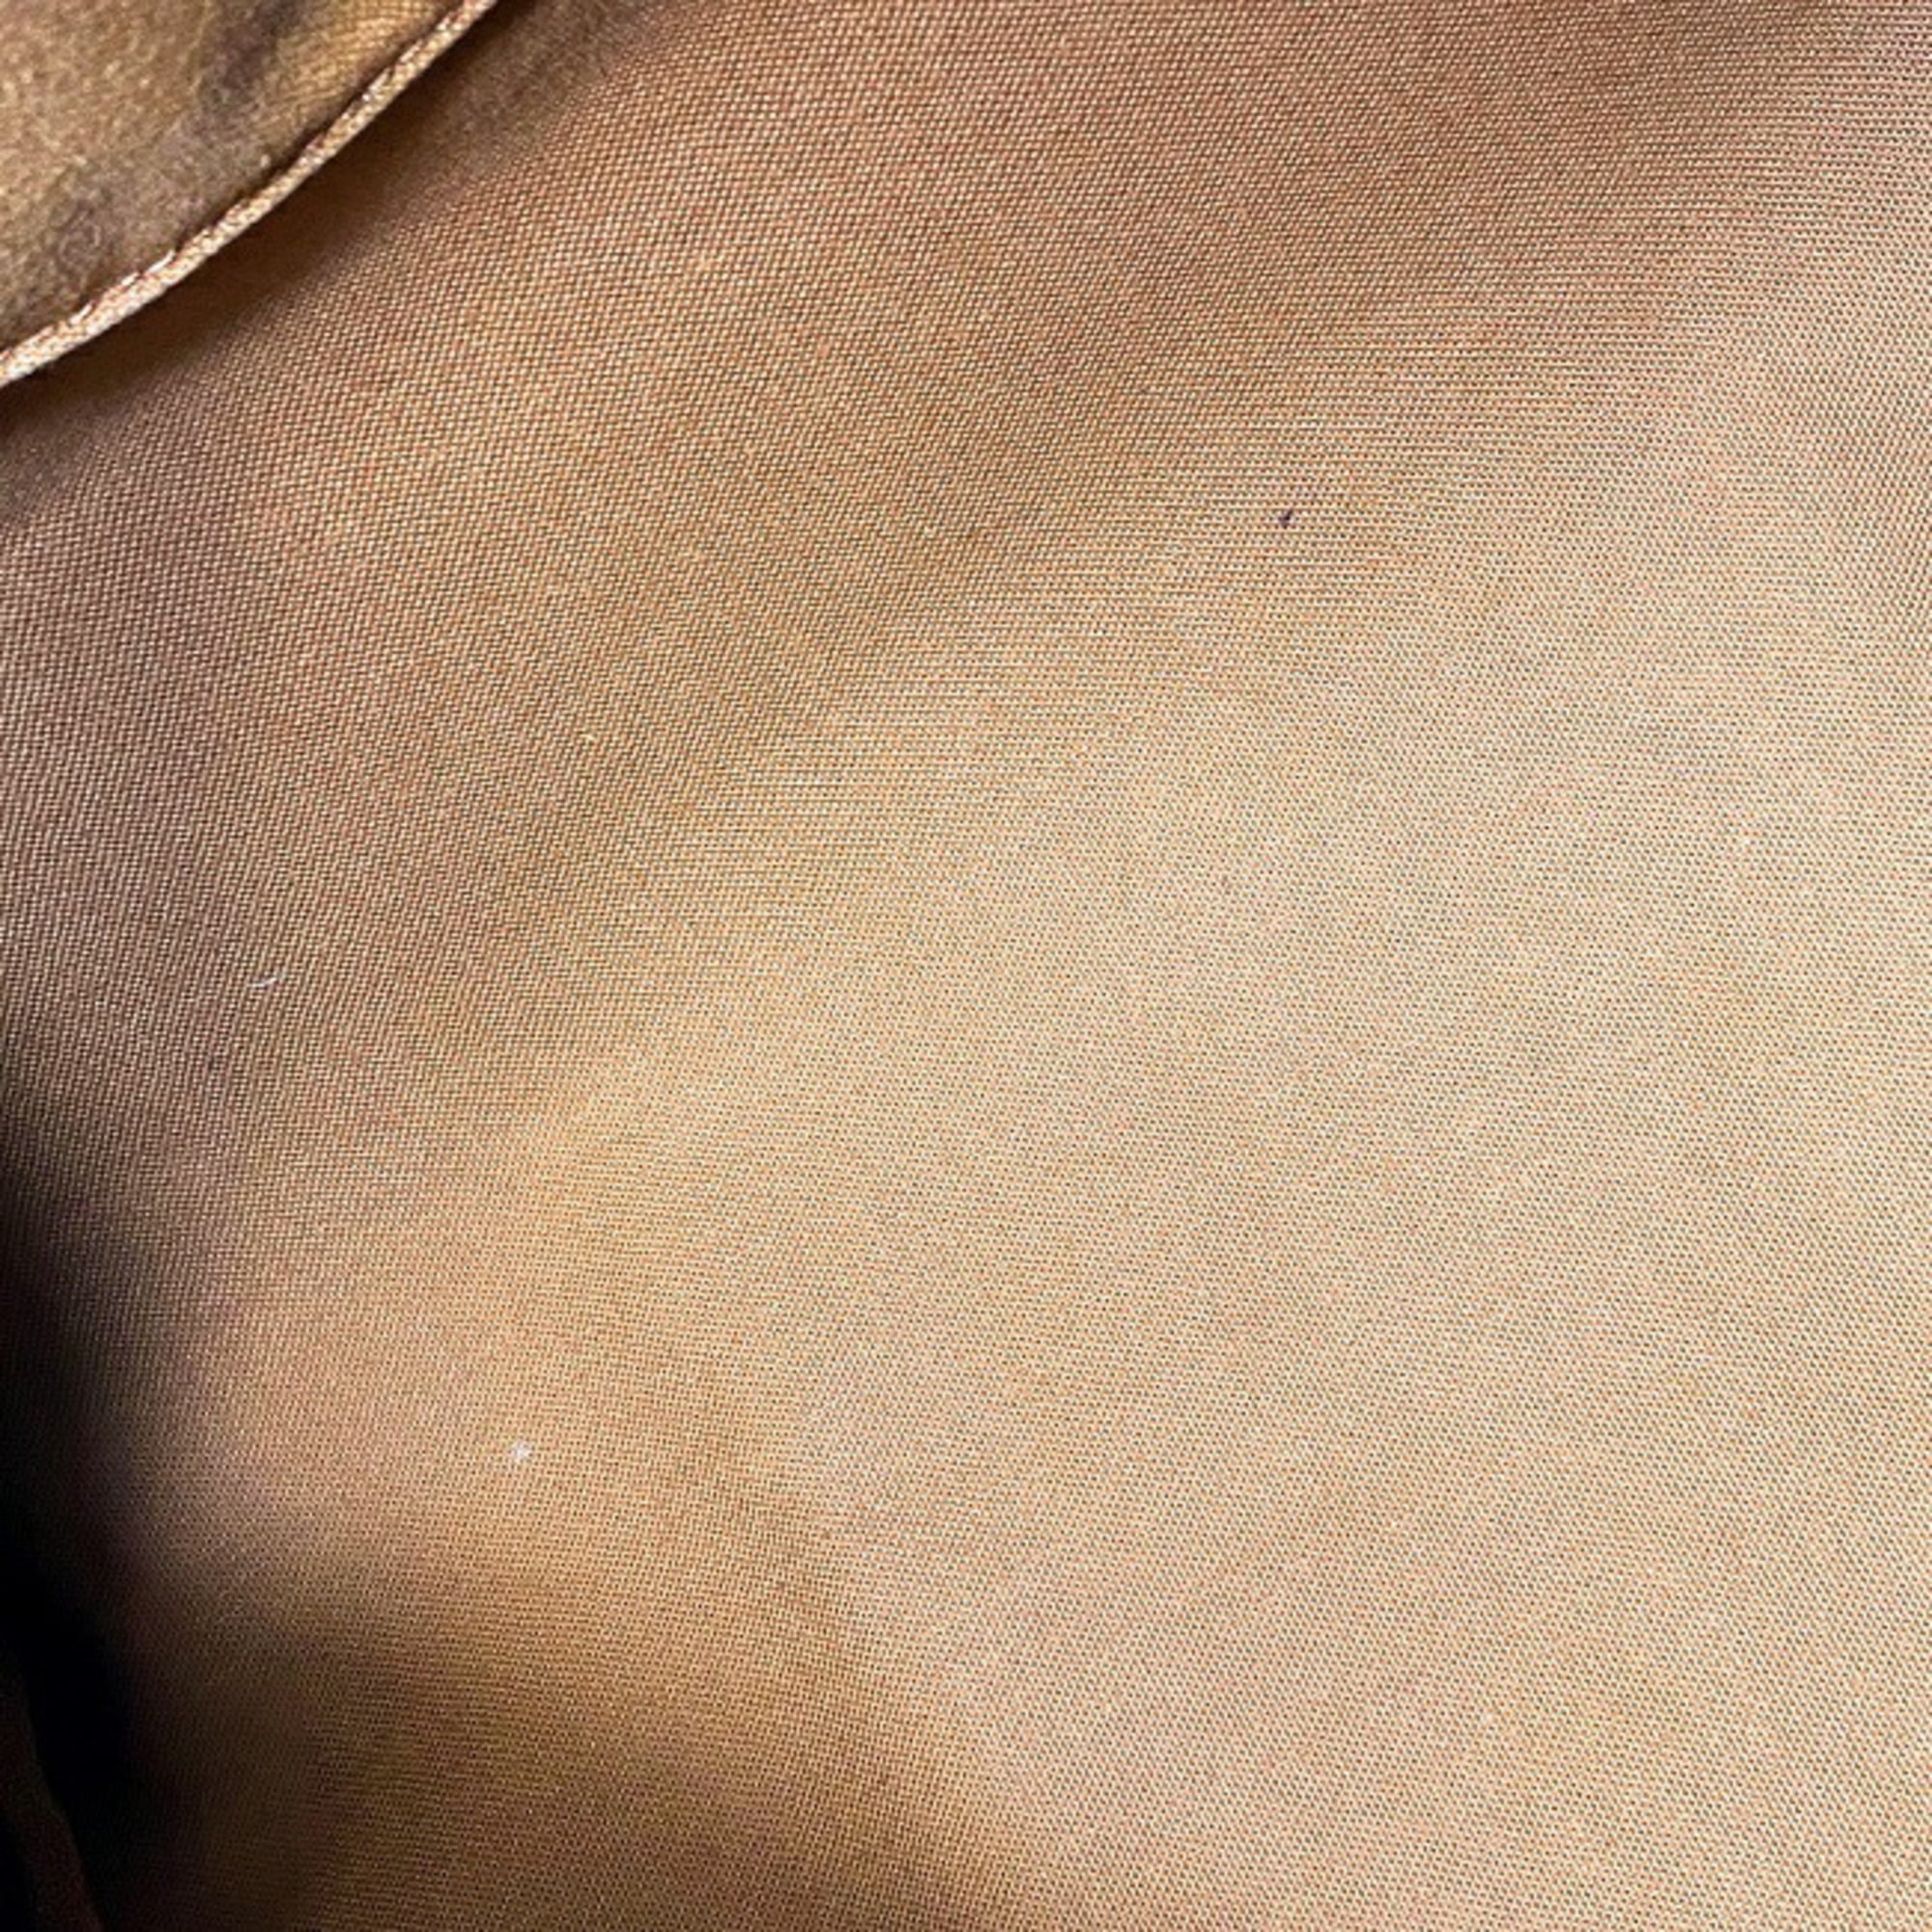 Speedy - Louis - M41526 – dct - Bag - Boston - Hand - Mochila Louis Vuitton  Louis Vuitton Editions Limitées en lona Monogram marrón y cuero natural -  30 - Monogram - ep_vintage luxury Store - Bag - Vuitton